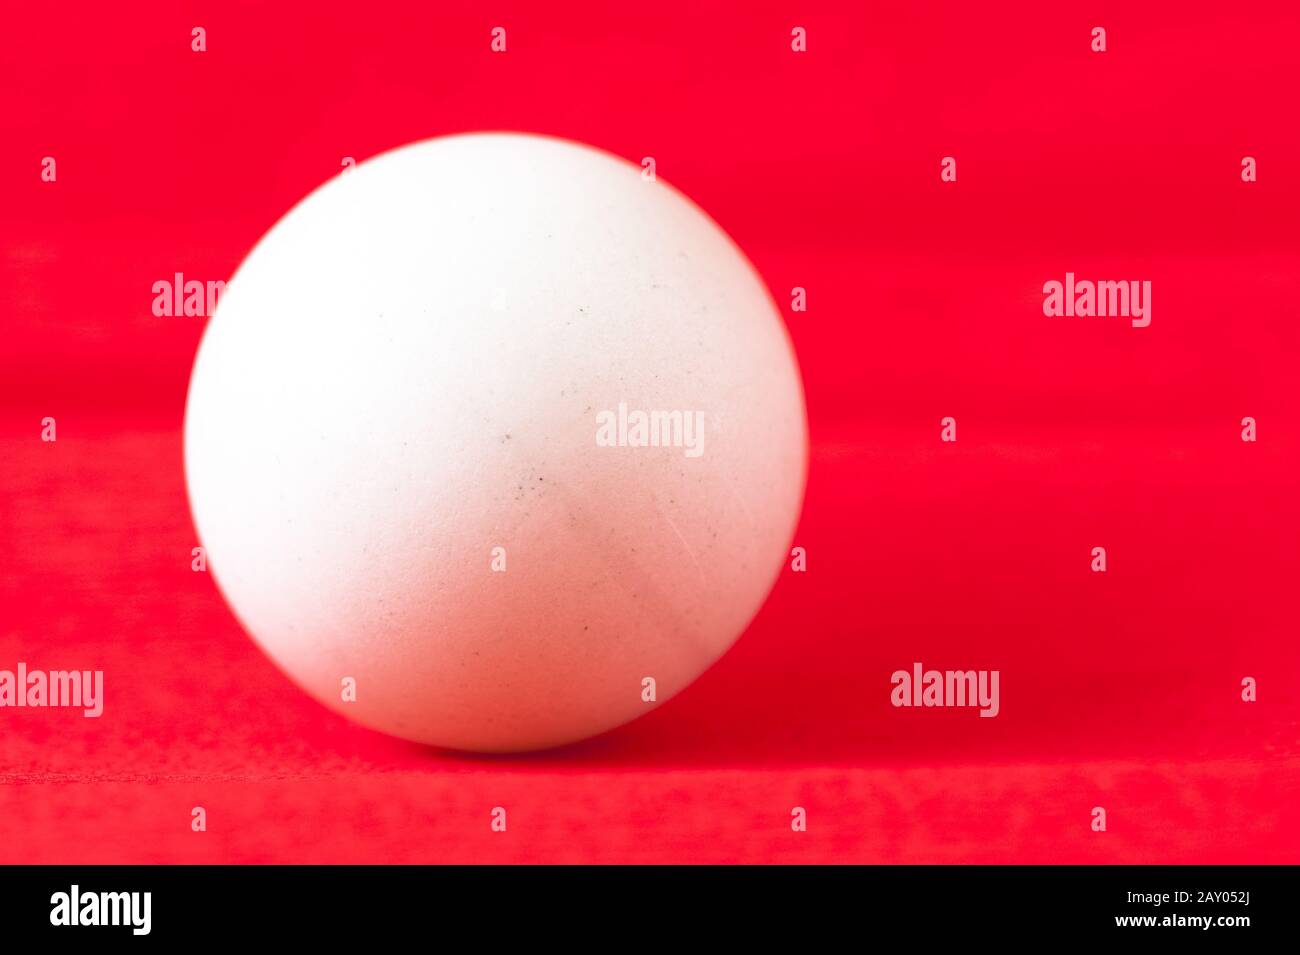 white table tennis ball Stock Photo